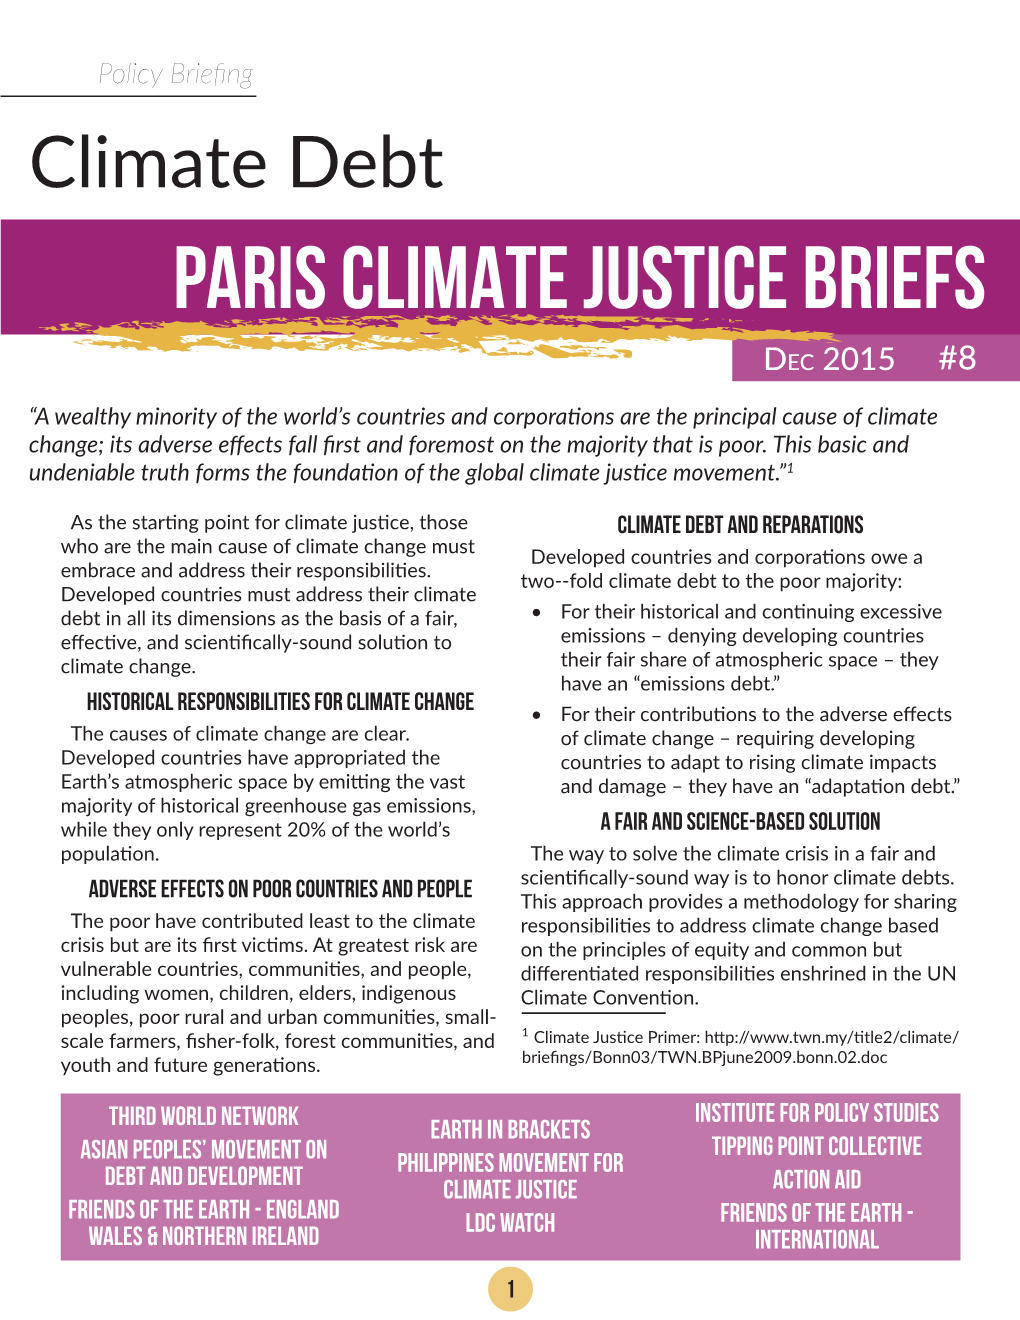 Paris Climate Justice Briefs, Climate Debt